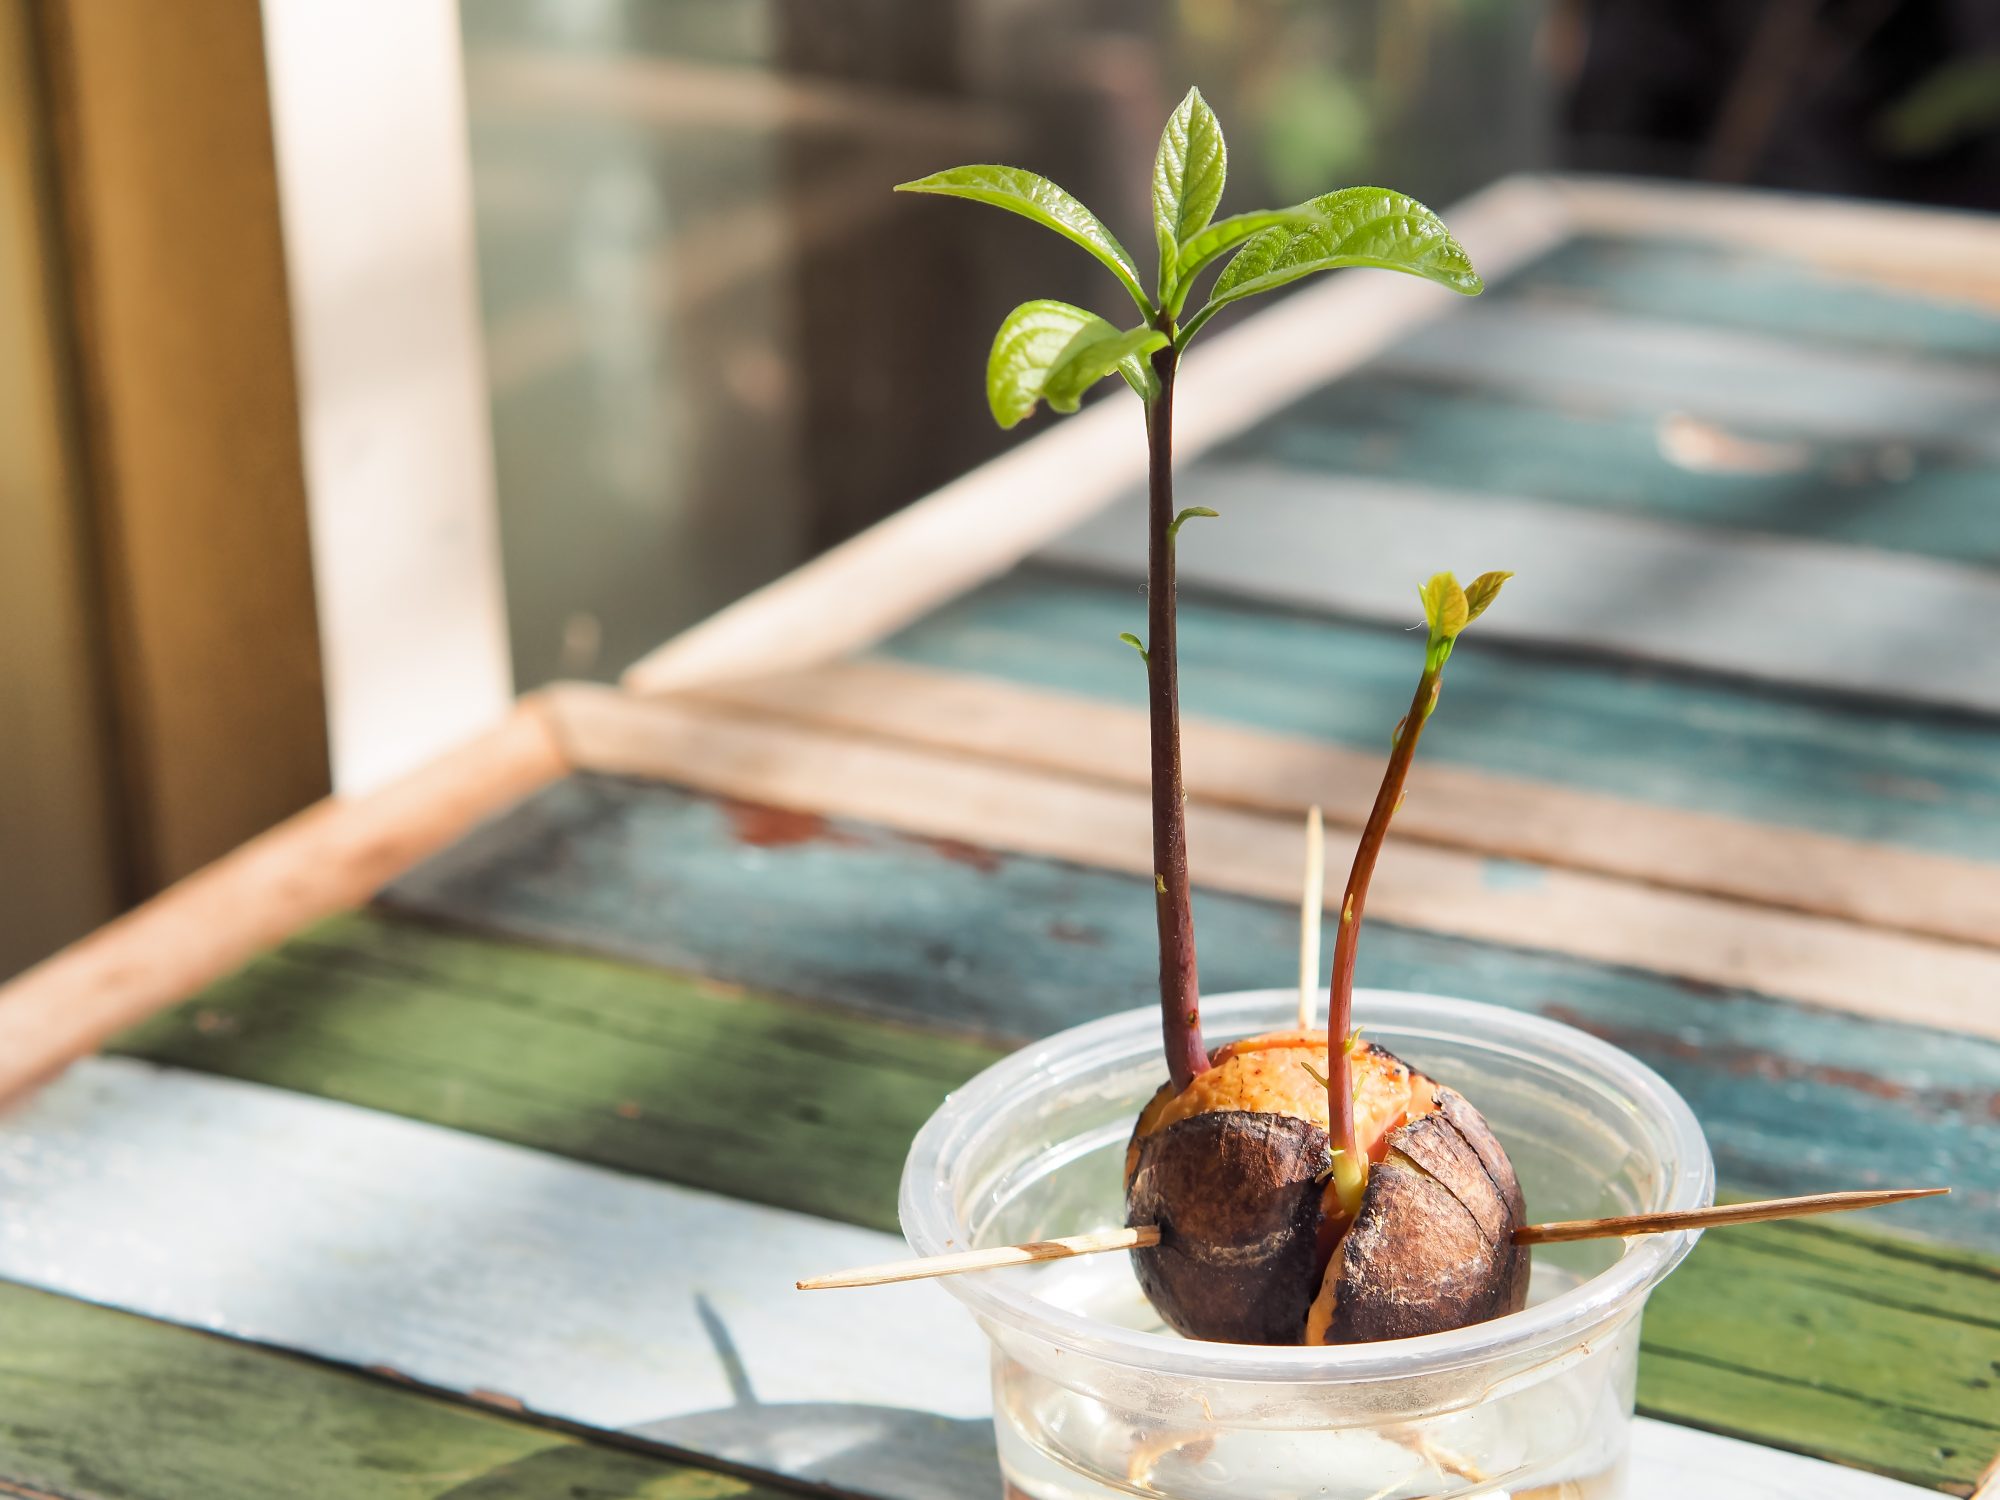 Coltivare i semi di avocado - Come piantare i semi di avocado?